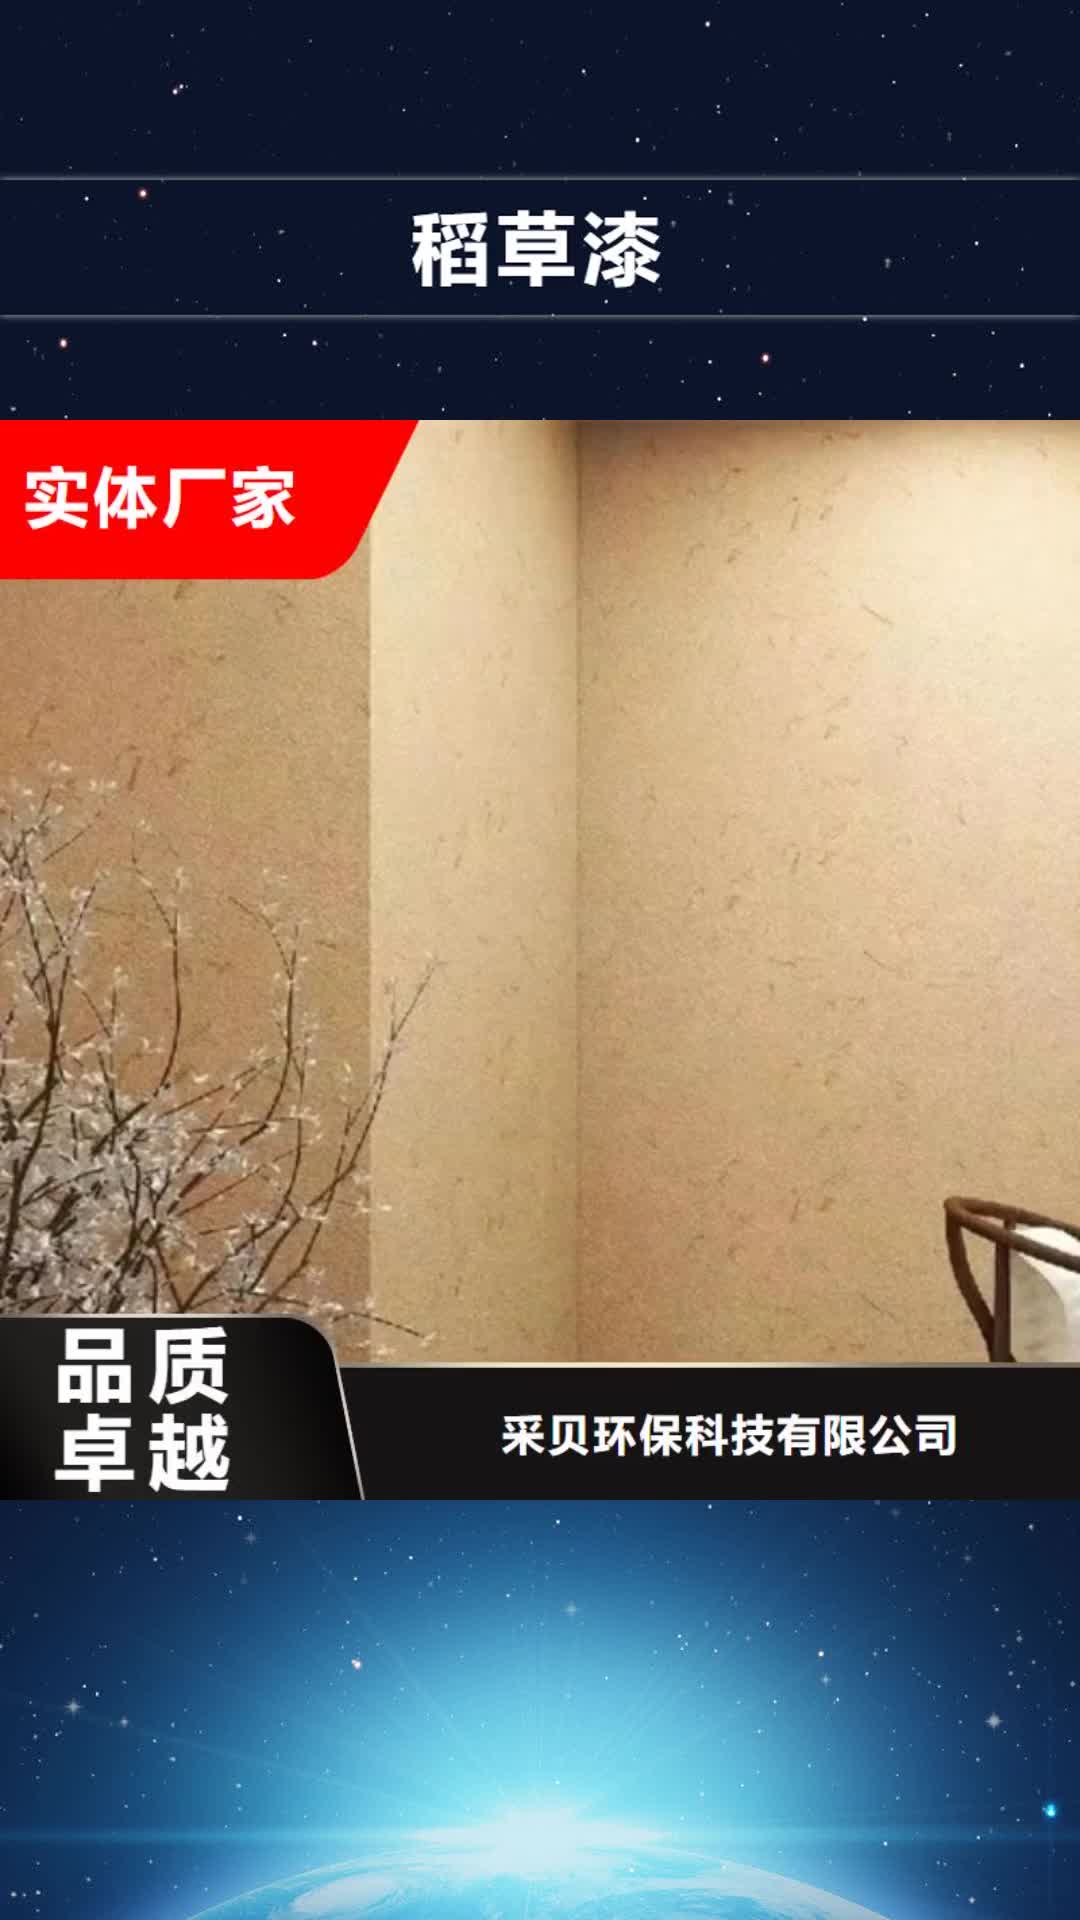 上饶【稻草漆】,内墙夯土板专业生产N年